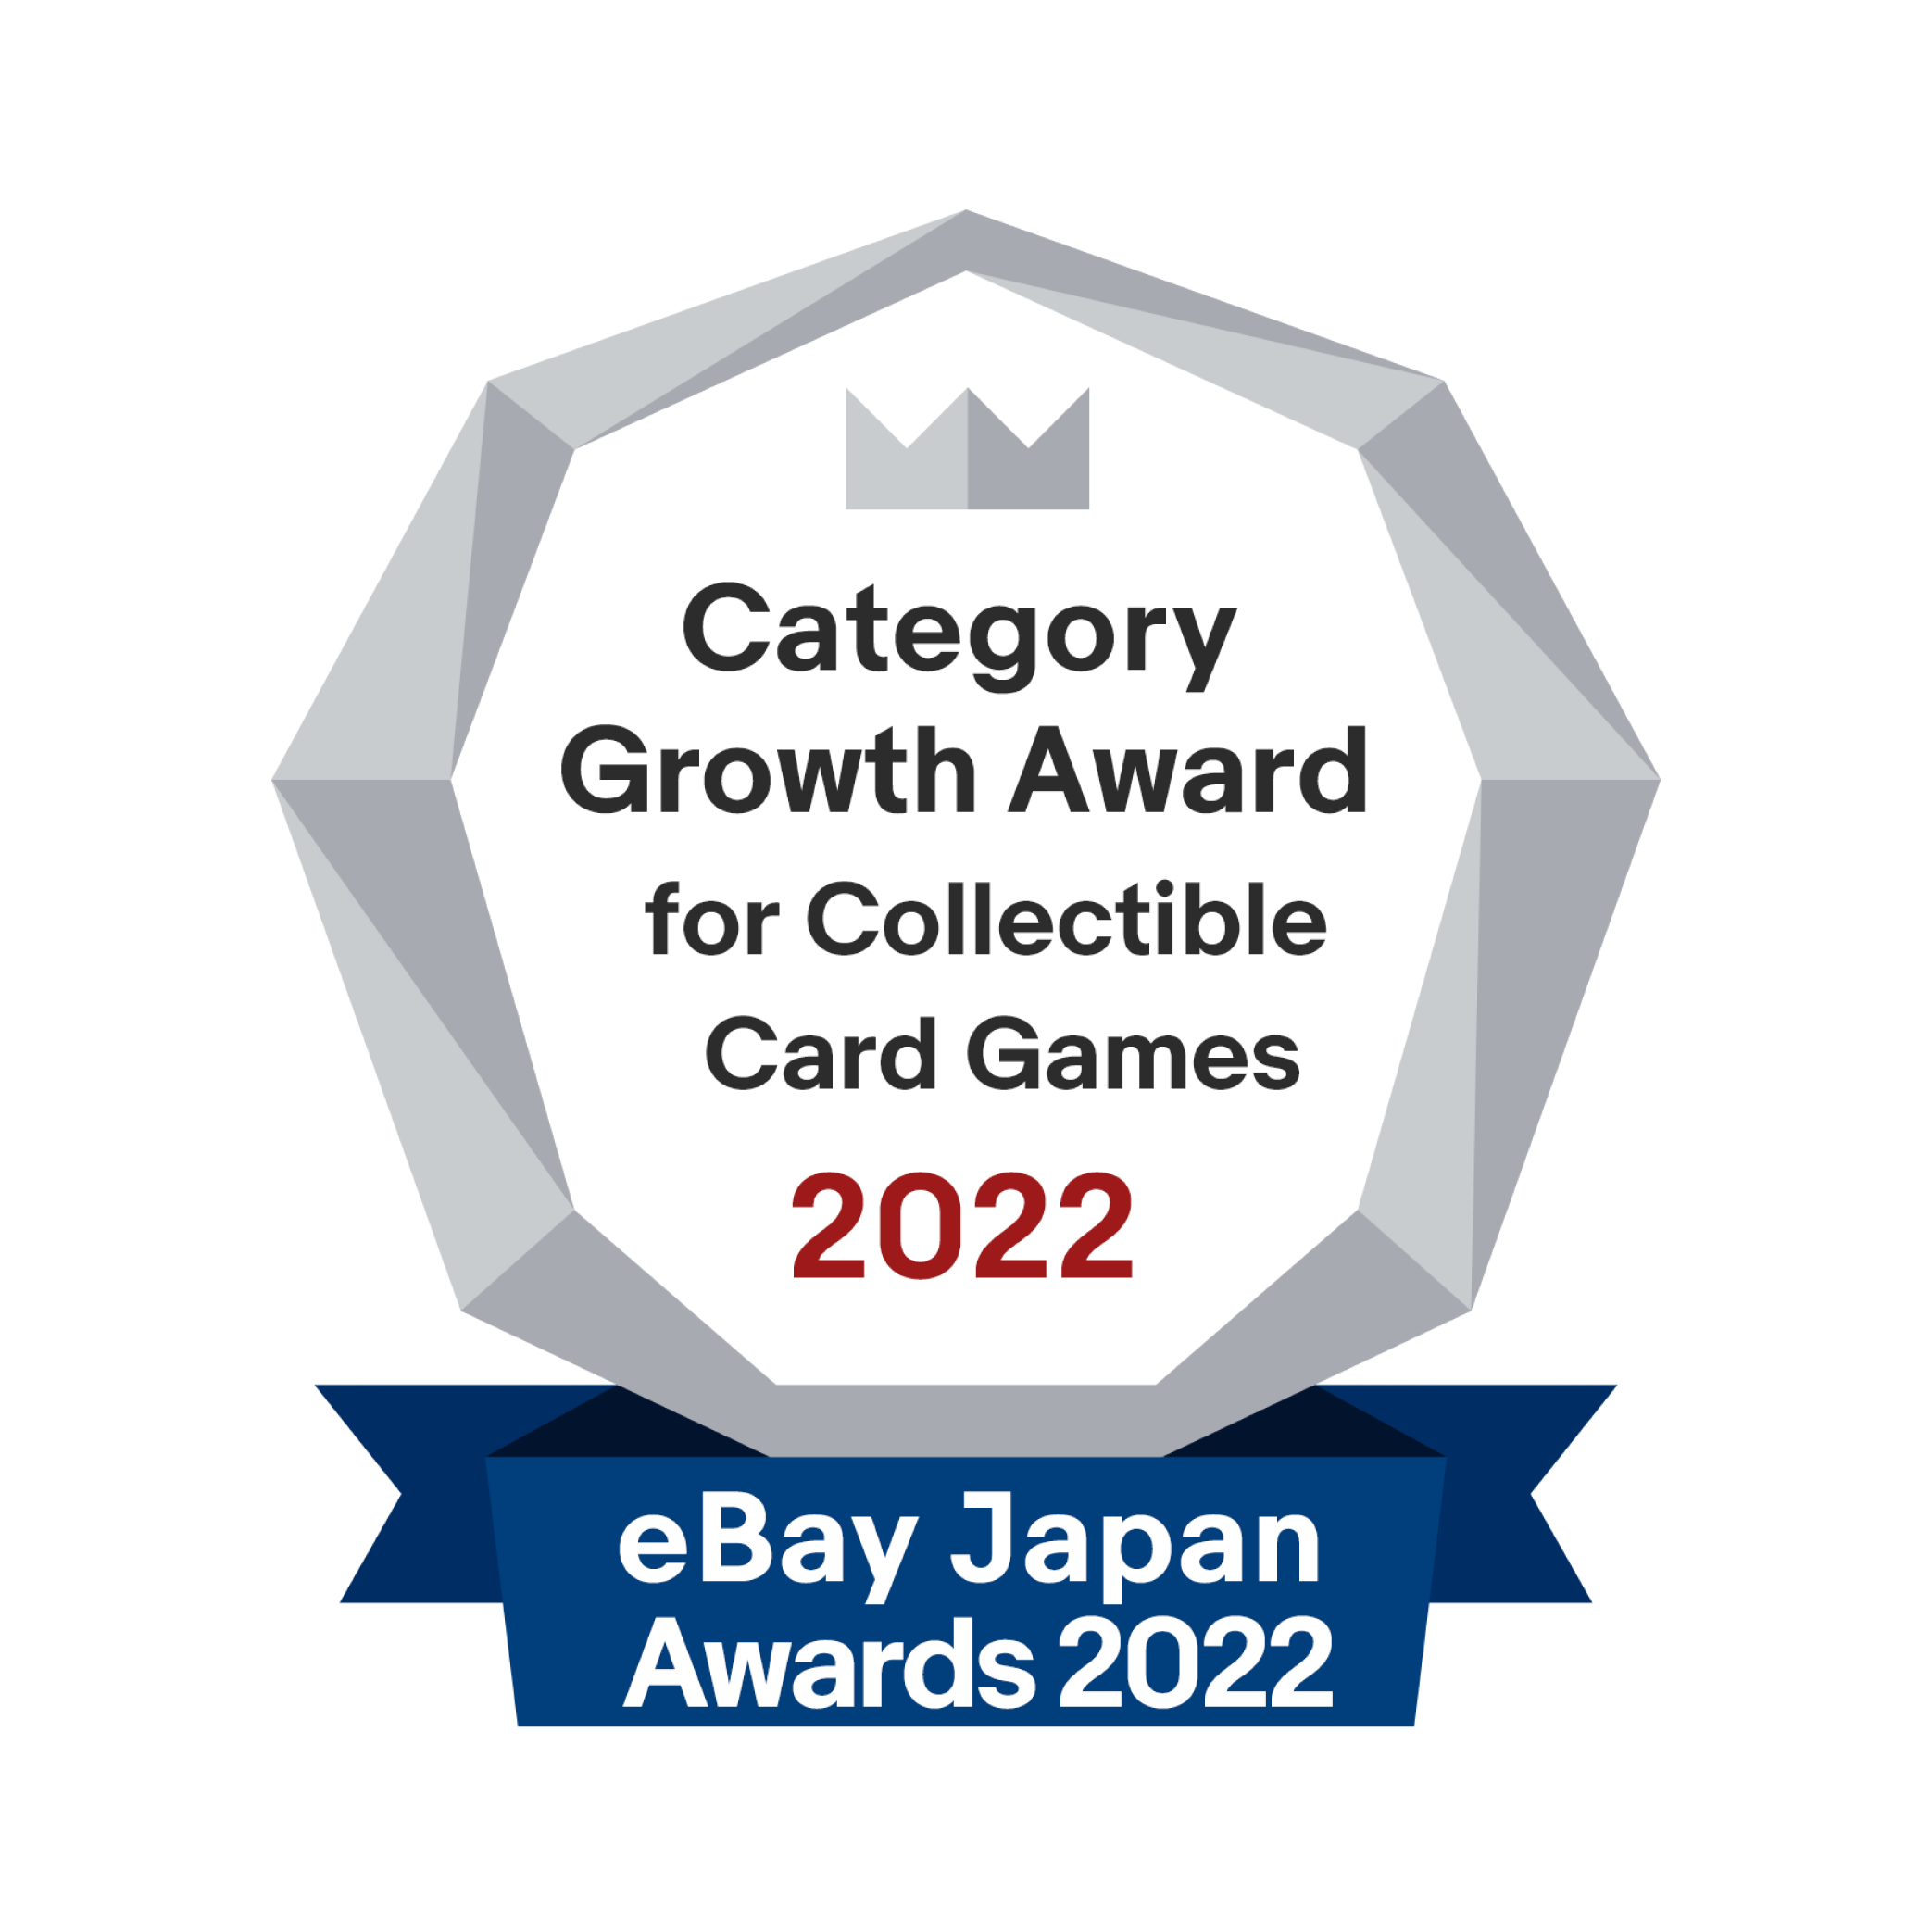 Japan Awards 2022